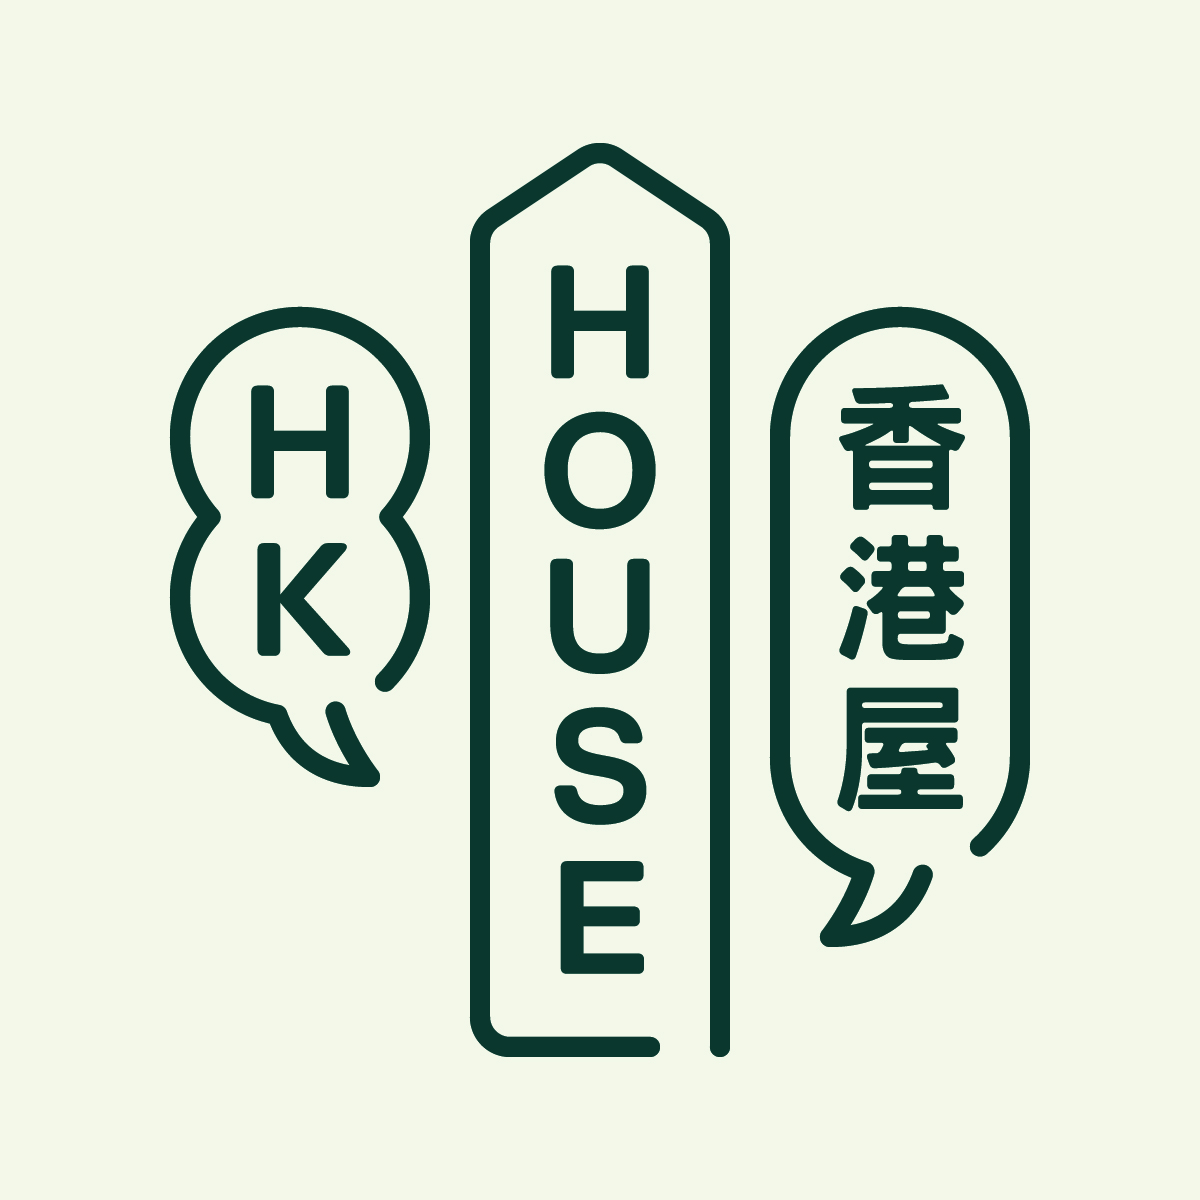 HONG KONG HOUSE CULTURAL SOCIETY Logo